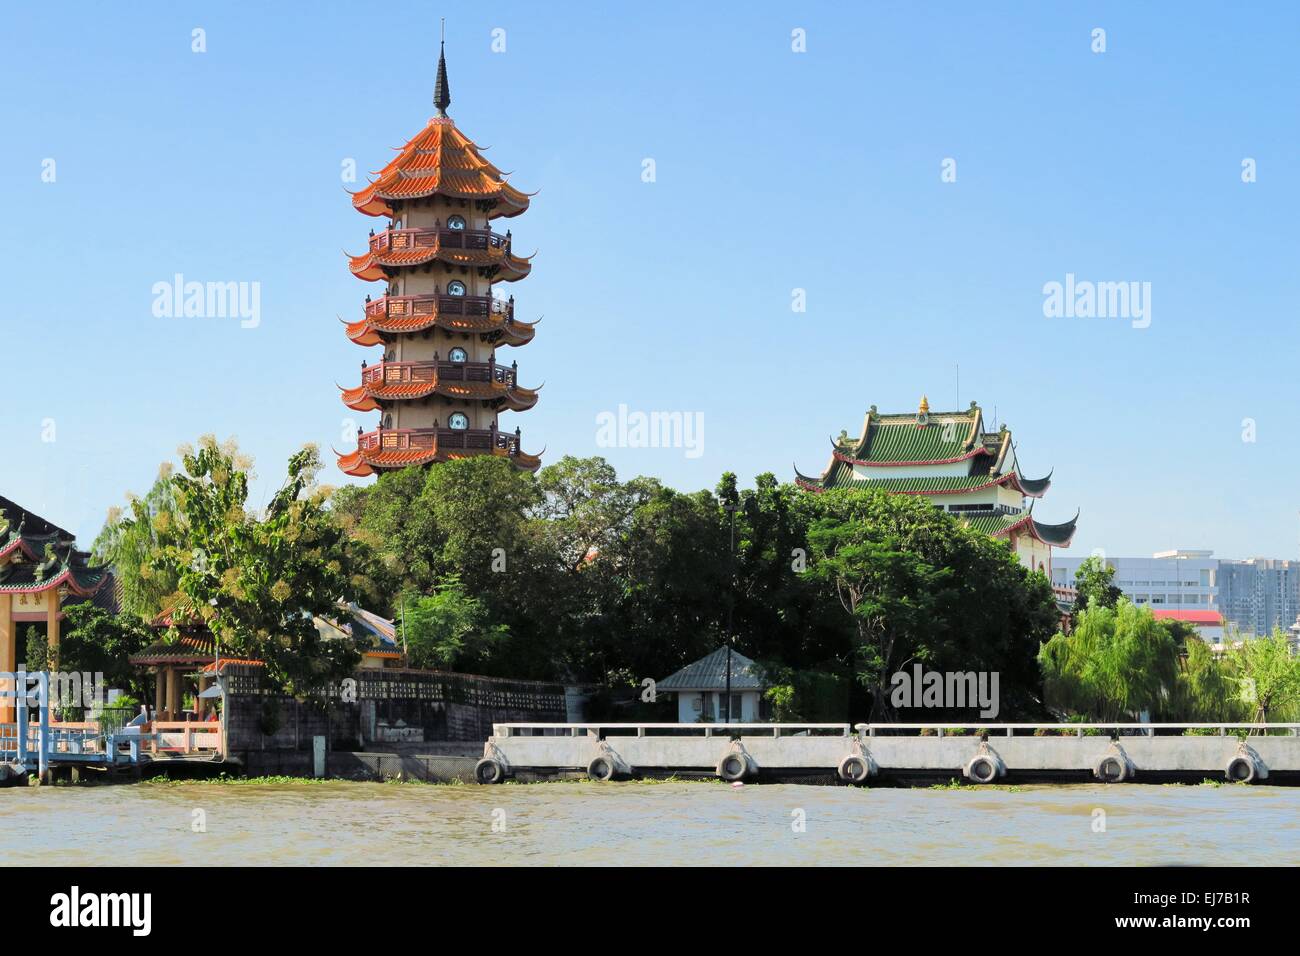 La pagoda cinese presso il fiume Chao Phraya, Bangkok, Thailandia Foto Stock